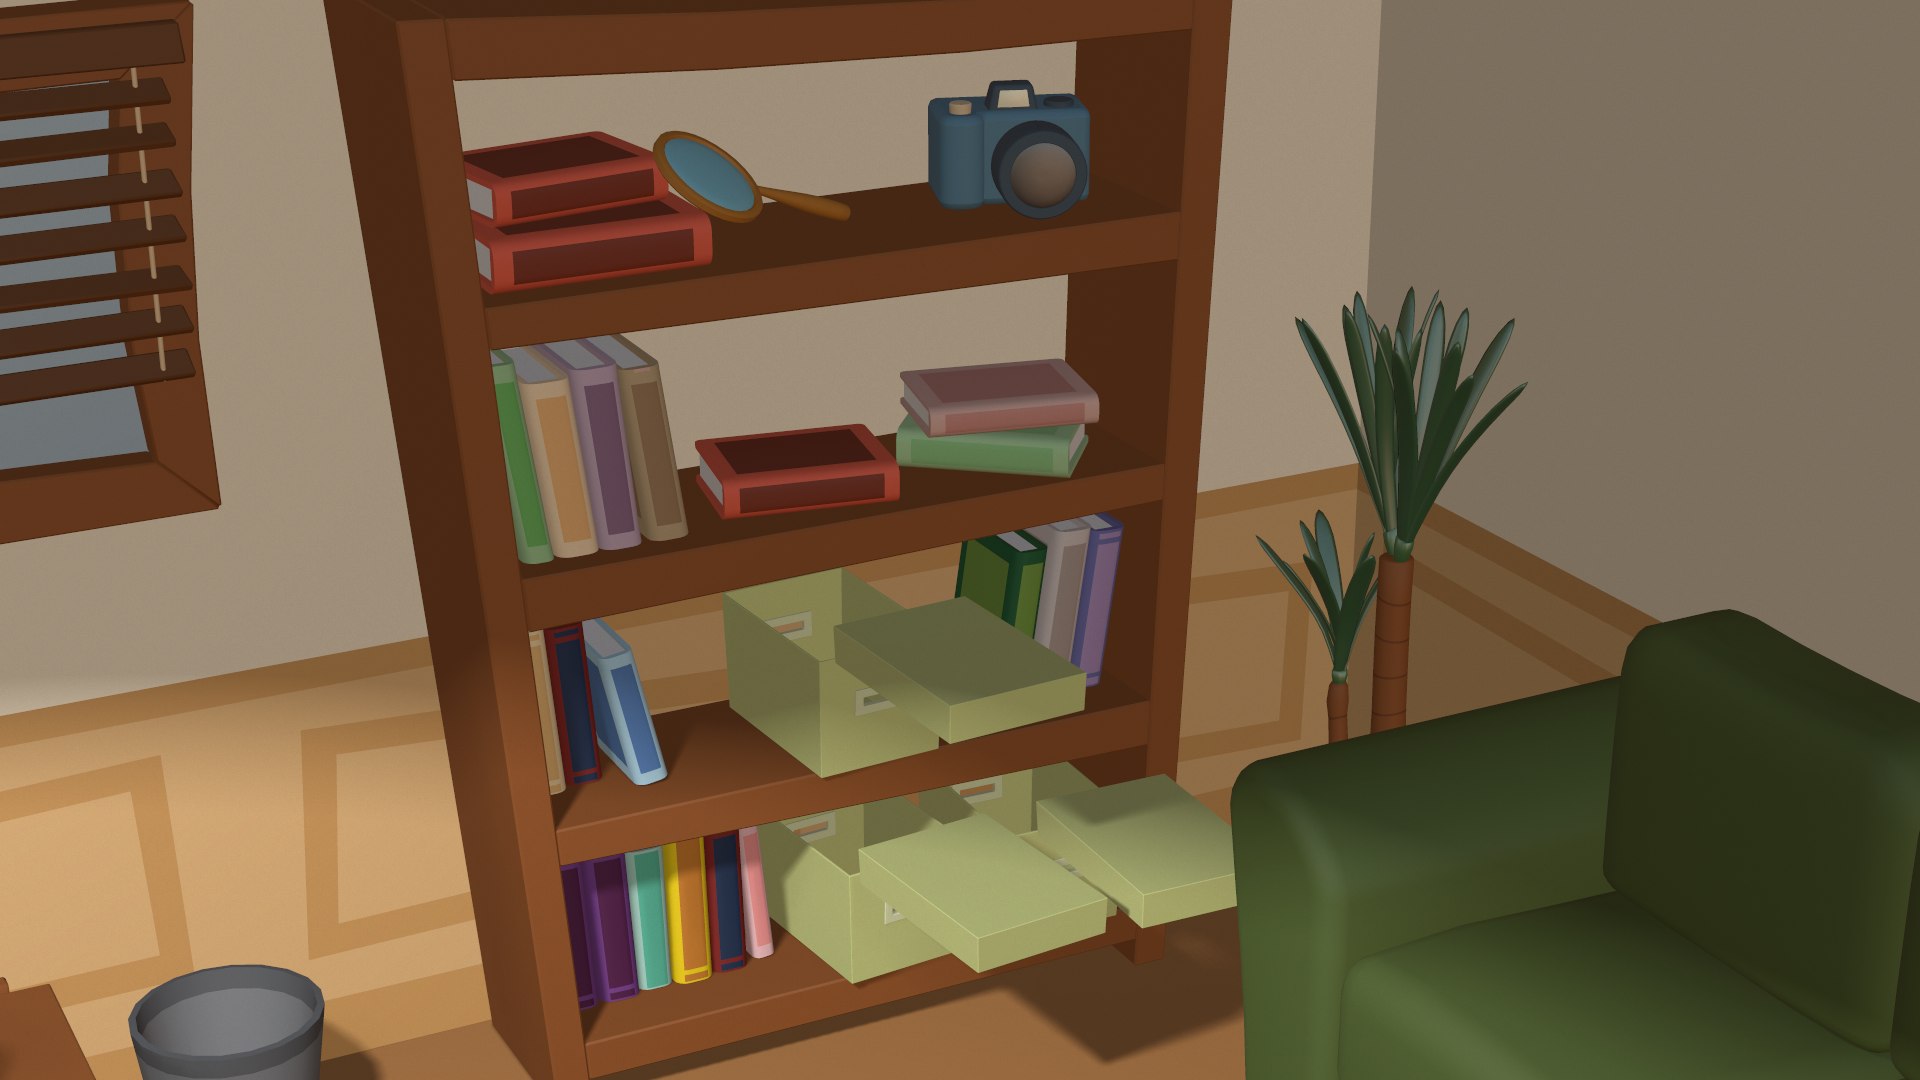 Cartoon Detective Office 3D Model - TurboSquid 1461321